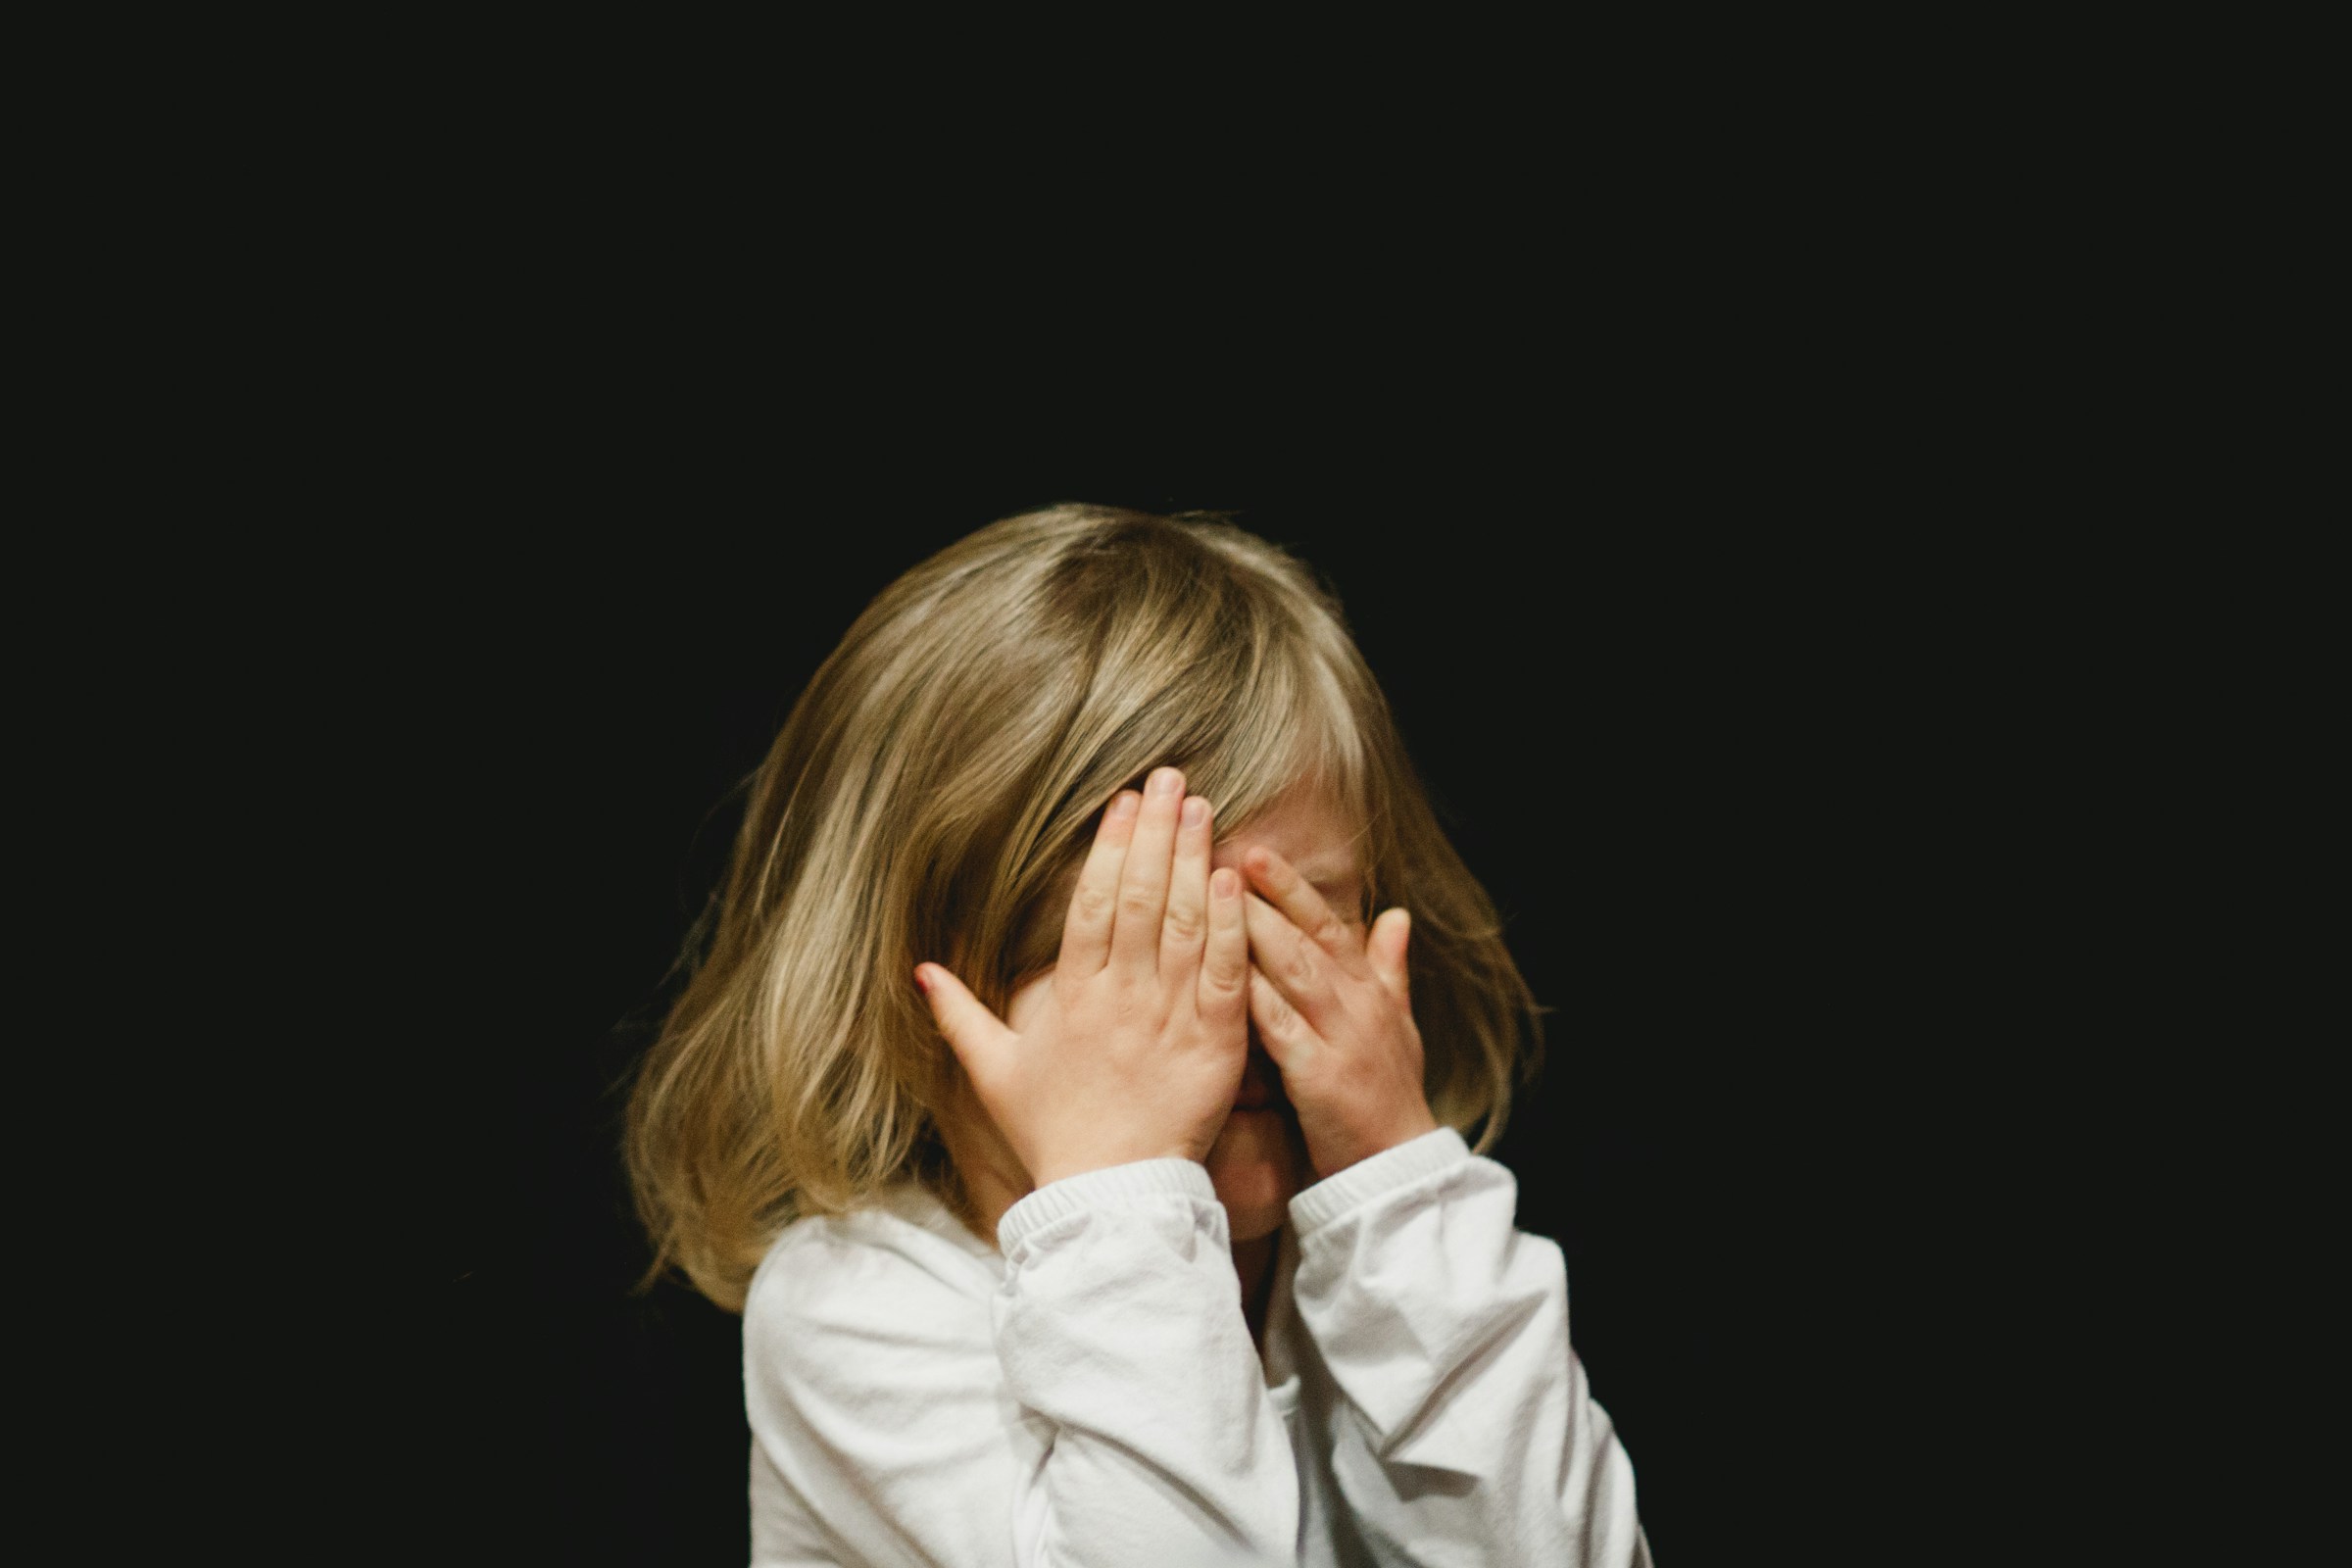 Una niña tapándose la cara | Fuente: Unsplash